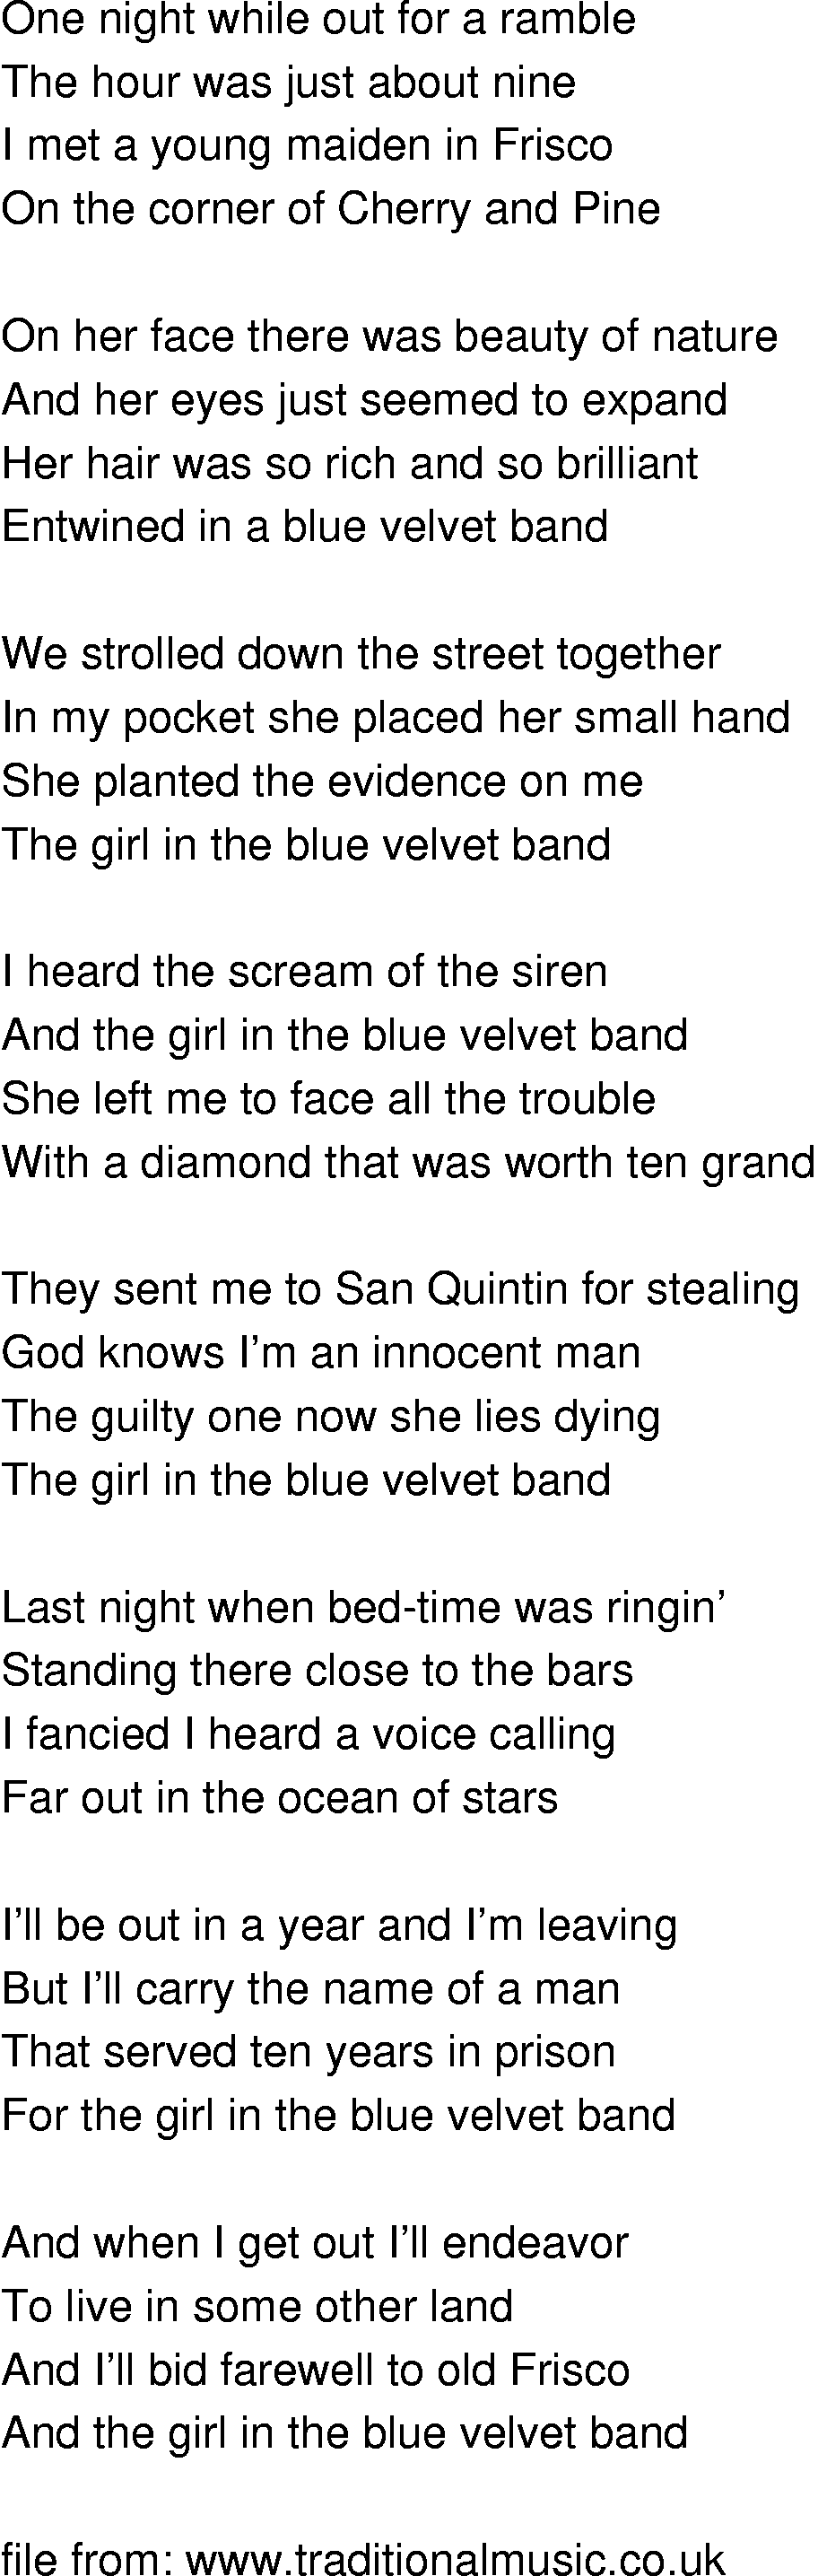 Old-Time (oldtimey) Song Lyrics - girl in the blue velvet band